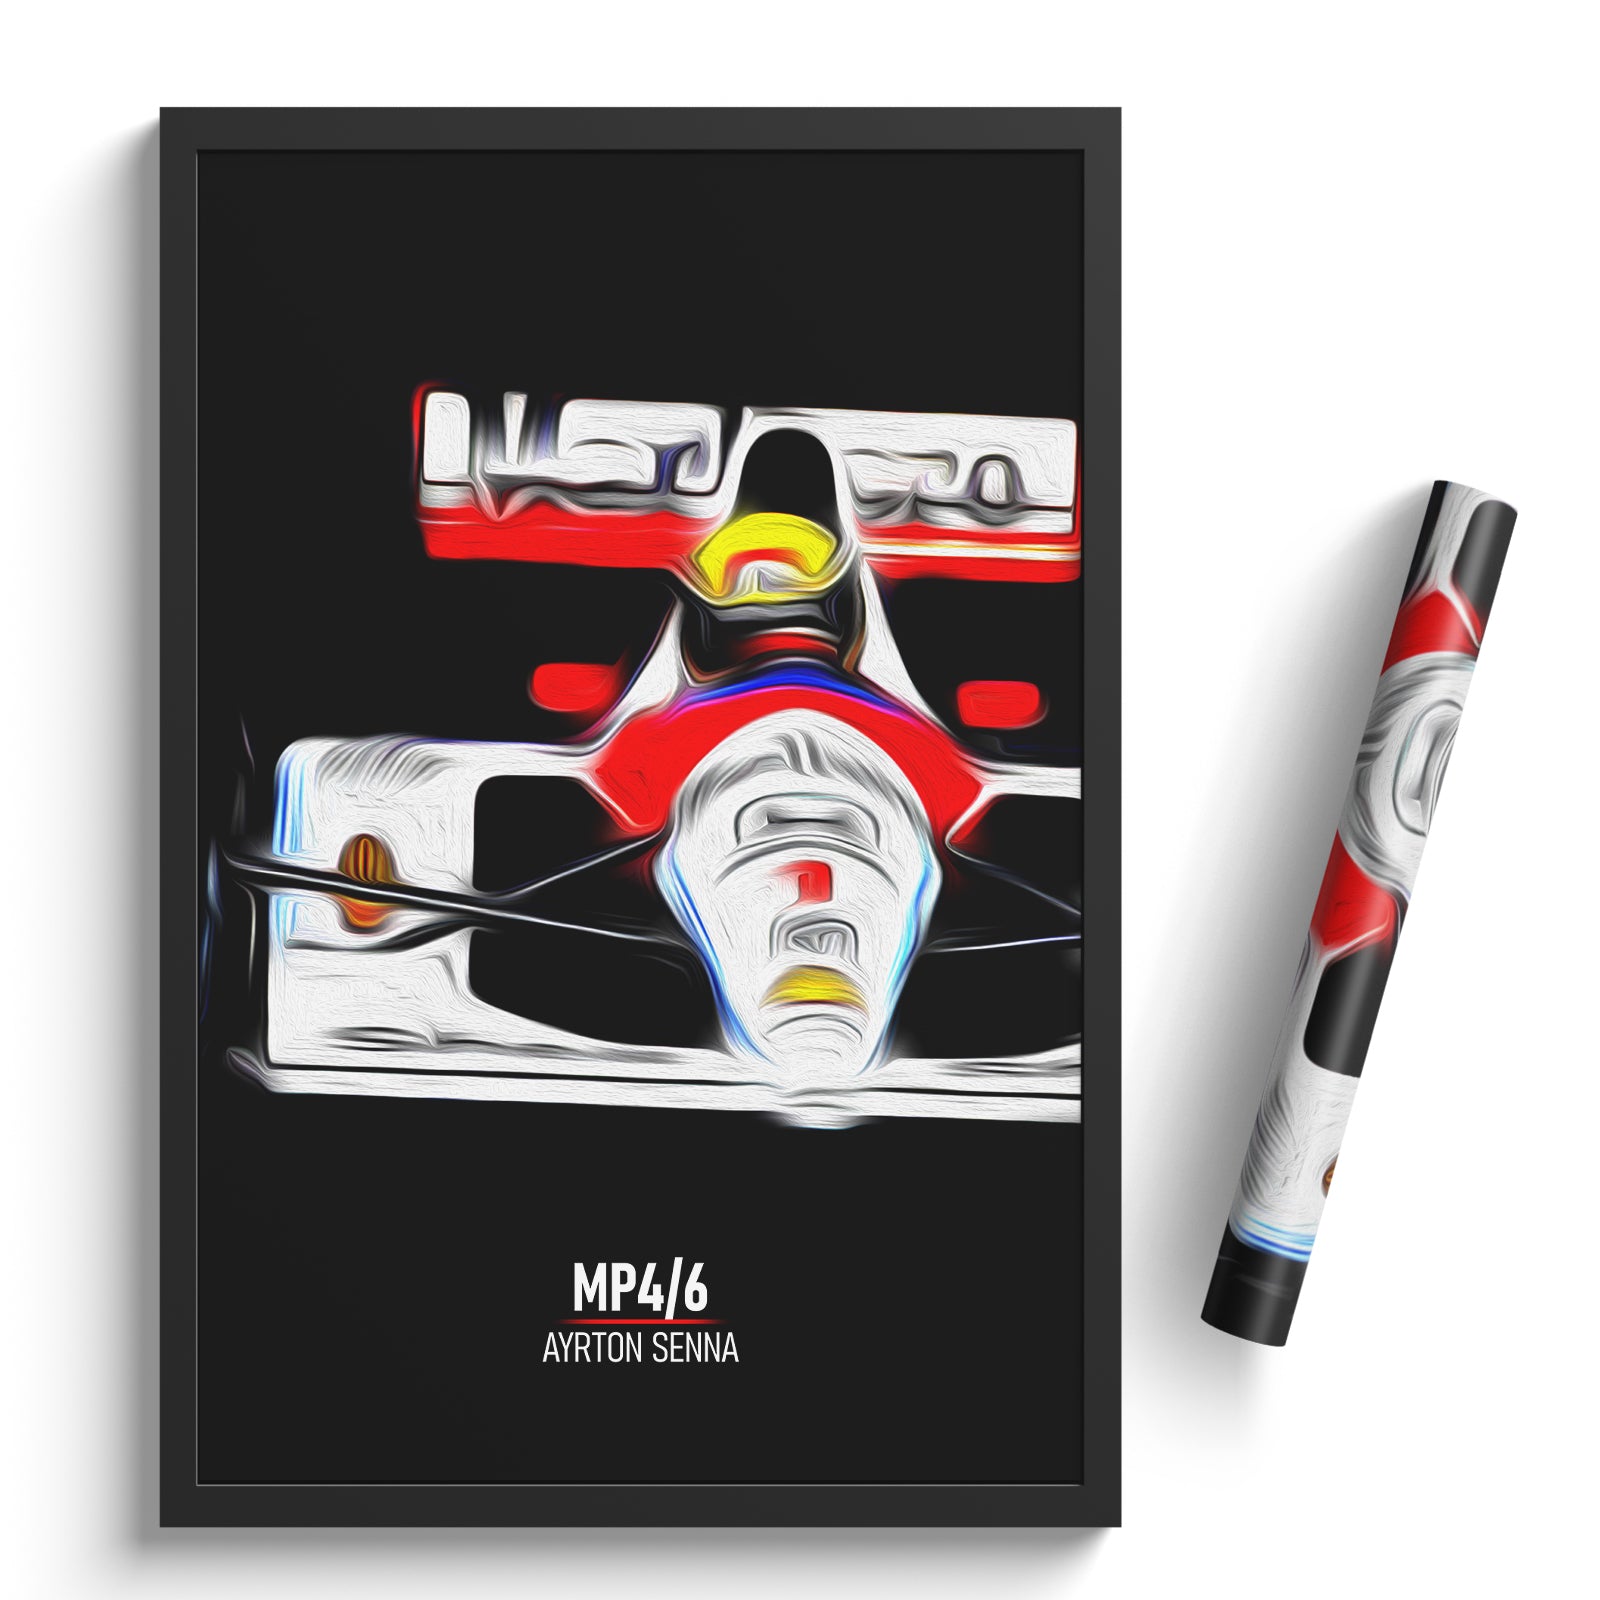 McLaren MP4/6, Ayrton Senna - Formula 1 Poster Print